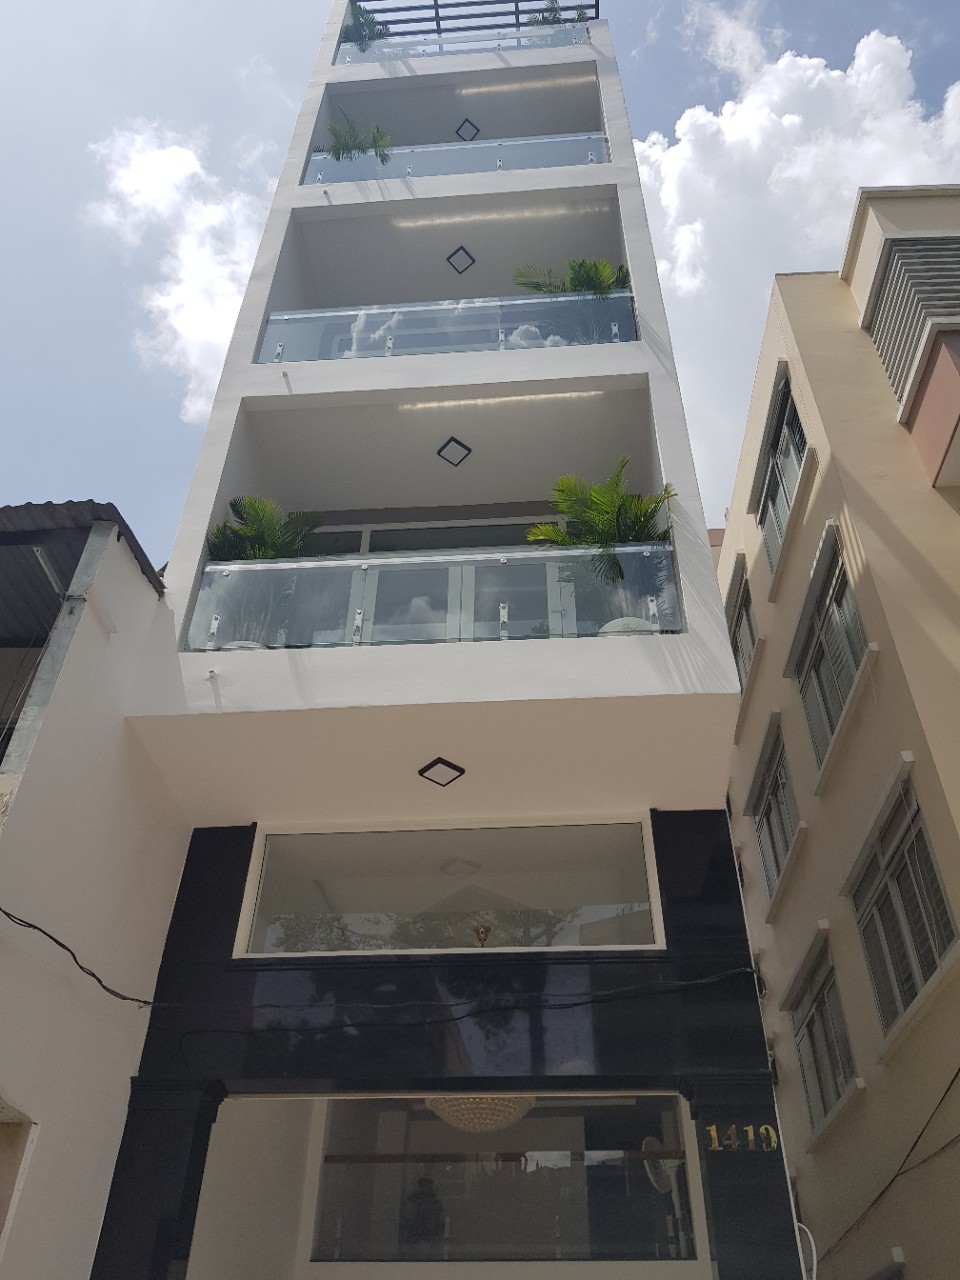 Định cư bán gấp nhà nhà đẹp ở ngay mặt tiền khu K300 P.12 Tân Bình, 6 tầng, 4*20, Giá 13,5 tỷ  